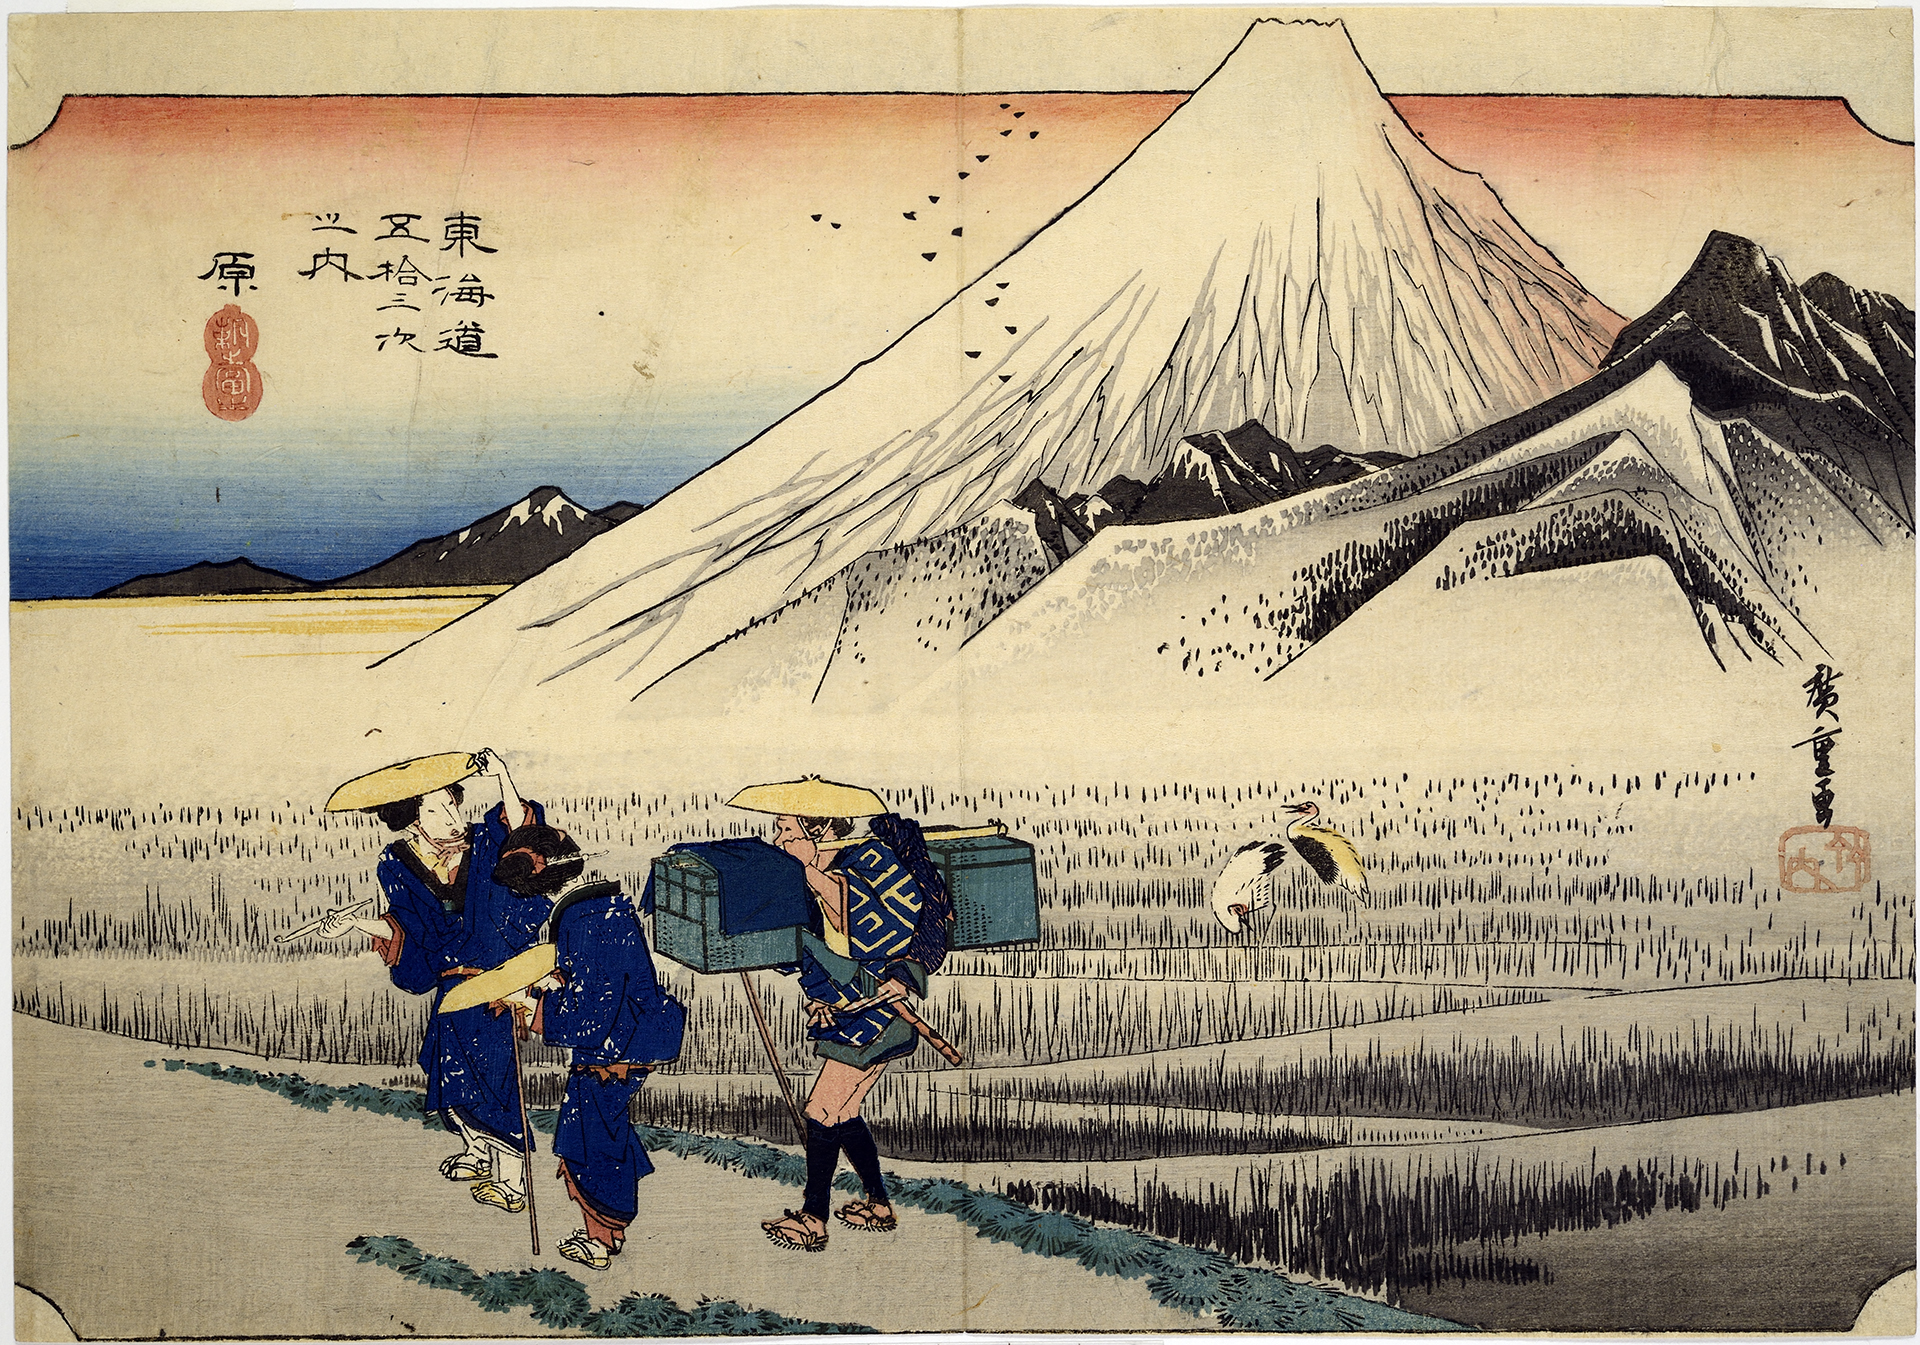 Hara #14, 1834, woodblock print by Andō Hiroshige